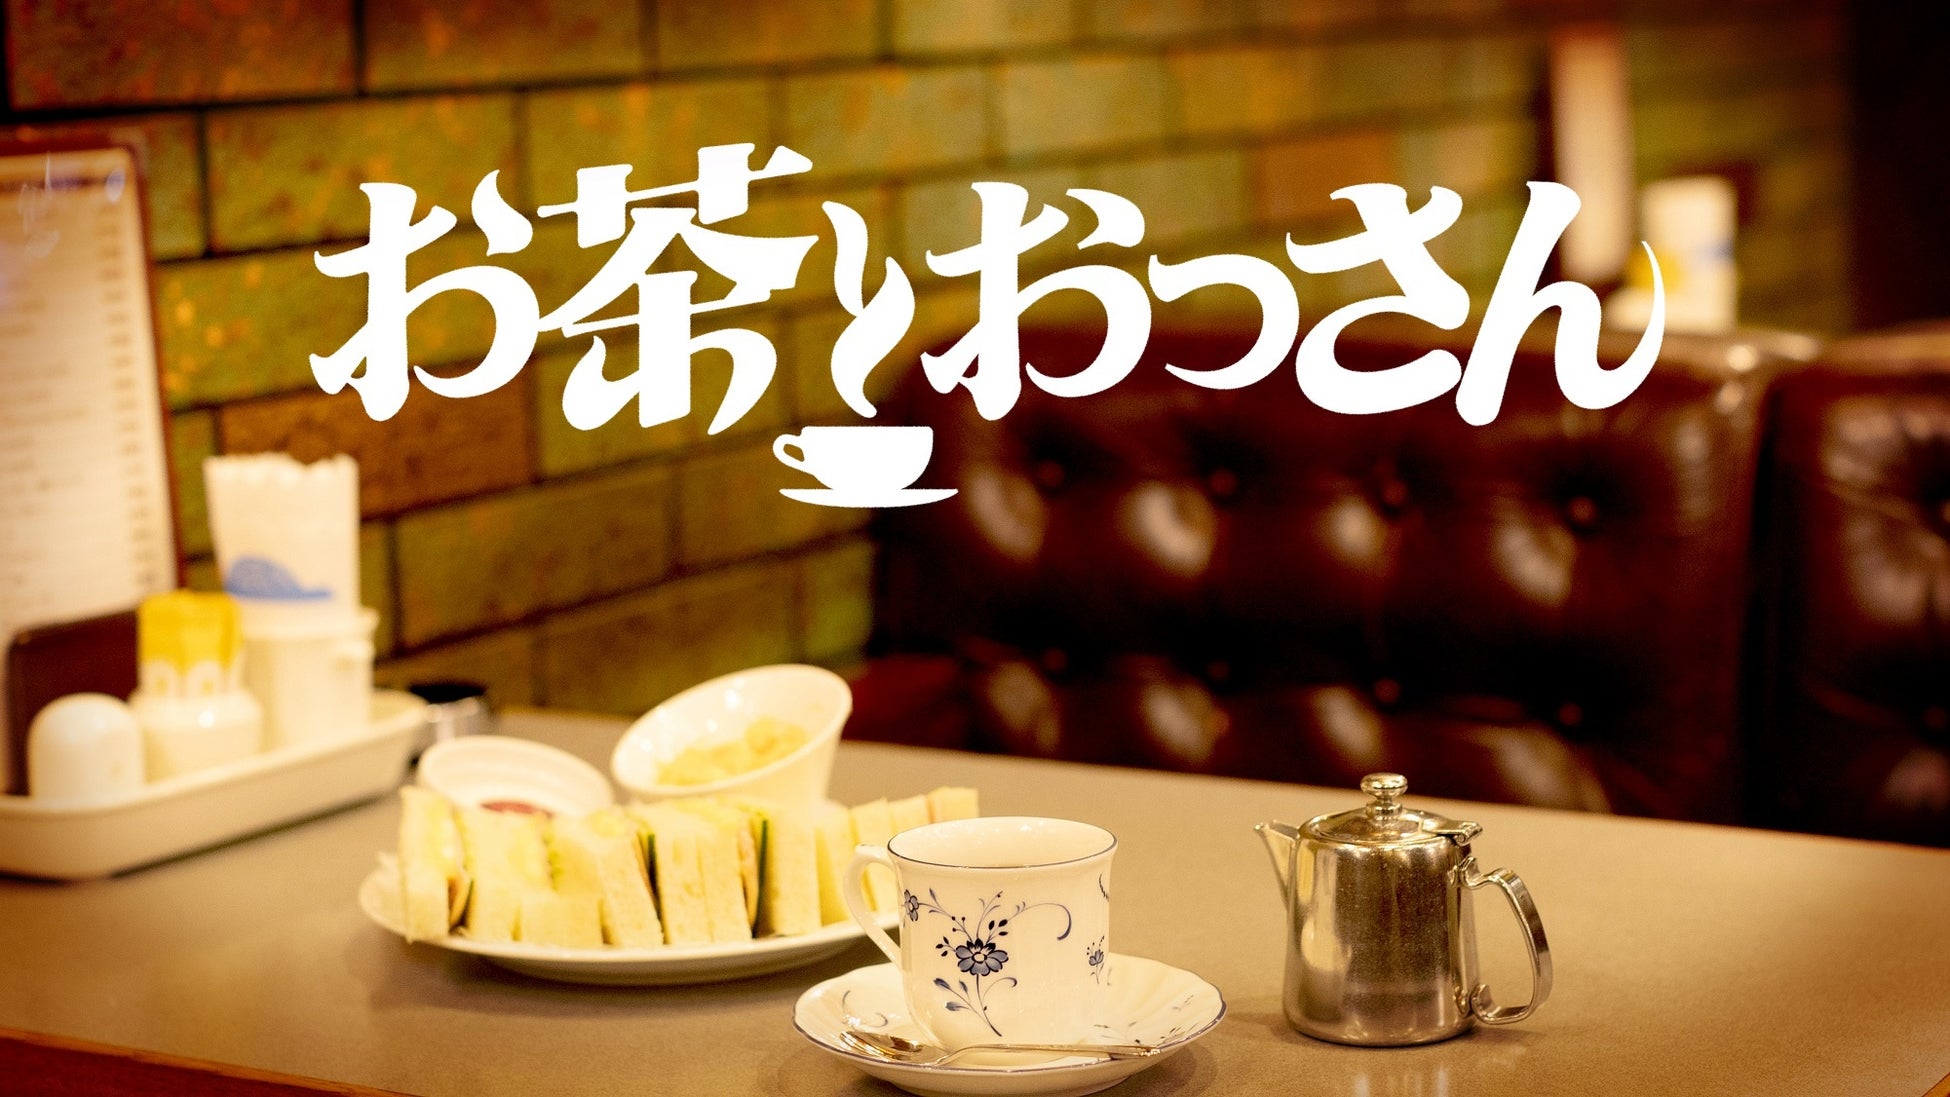 松本人志と高須光聖らおっさんたちが、茶飲み話をしながら、これから始まる新しい世界と出会う番組『お茶とおっさん』#8「ダイジェスト特別編」のサブ画像3